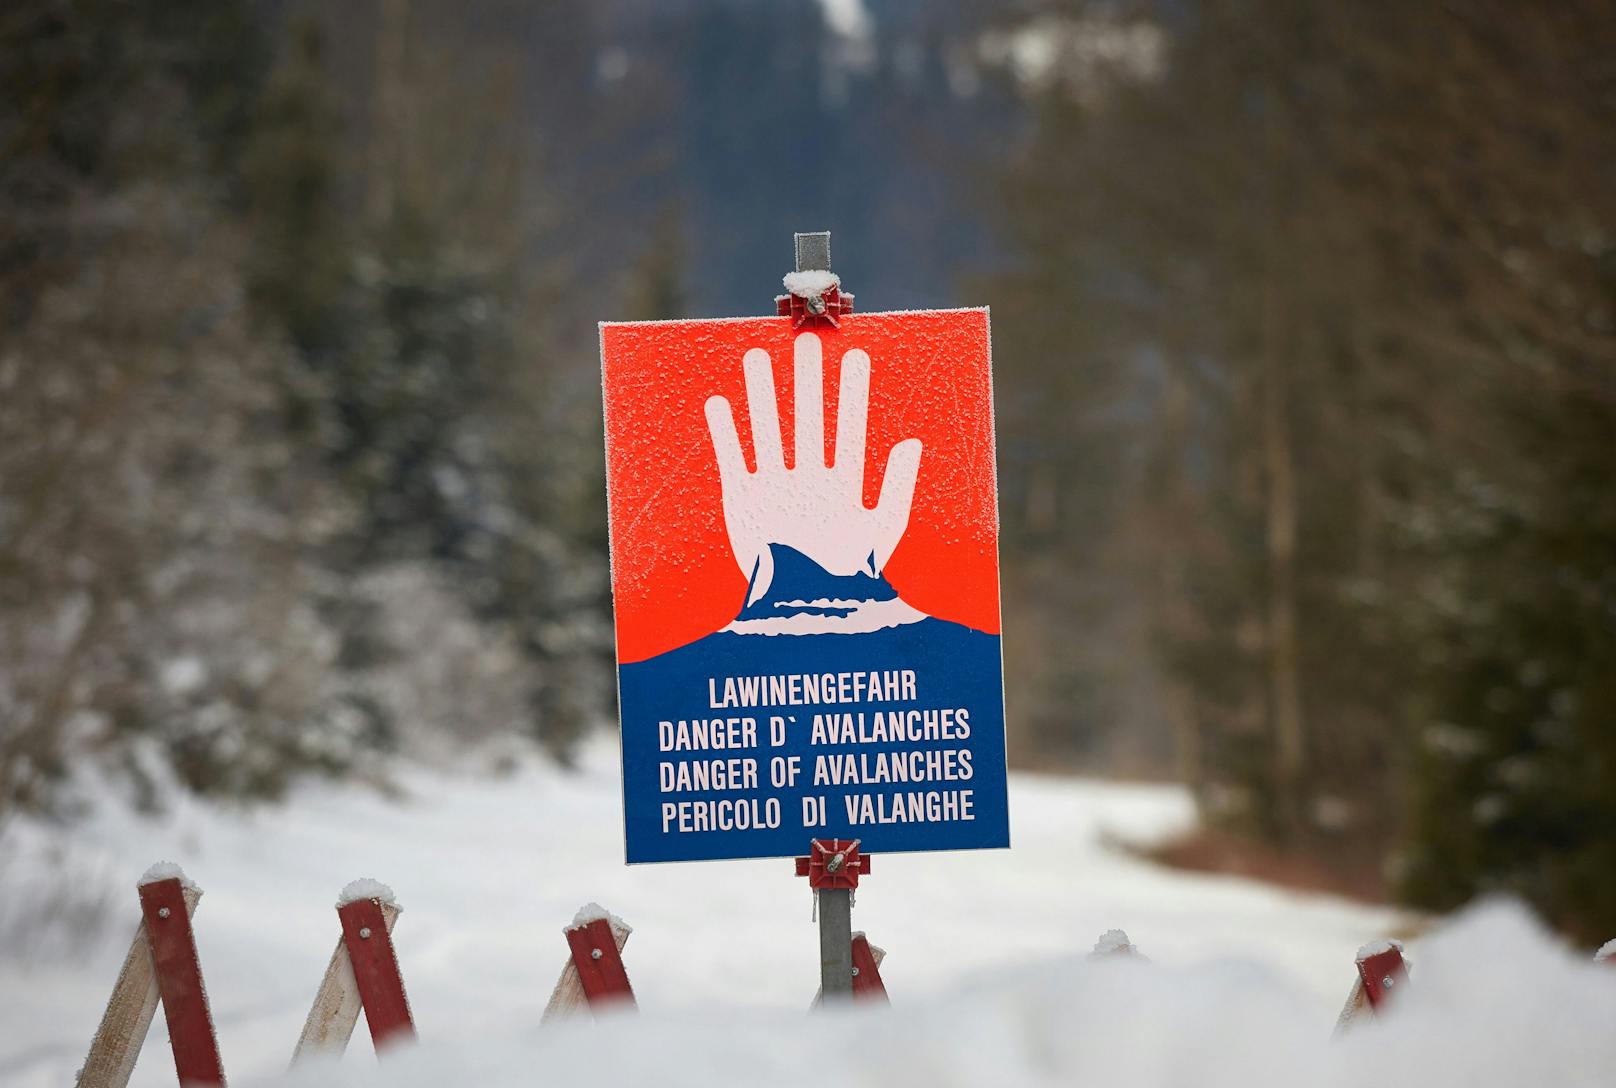 Die Lawinenverhältnisse bleiben also weiter ungünstig. "Große Vorsicht und Zurückhaltung sind angebracht", so die Experten der Landeswarnzentrale Tirol.